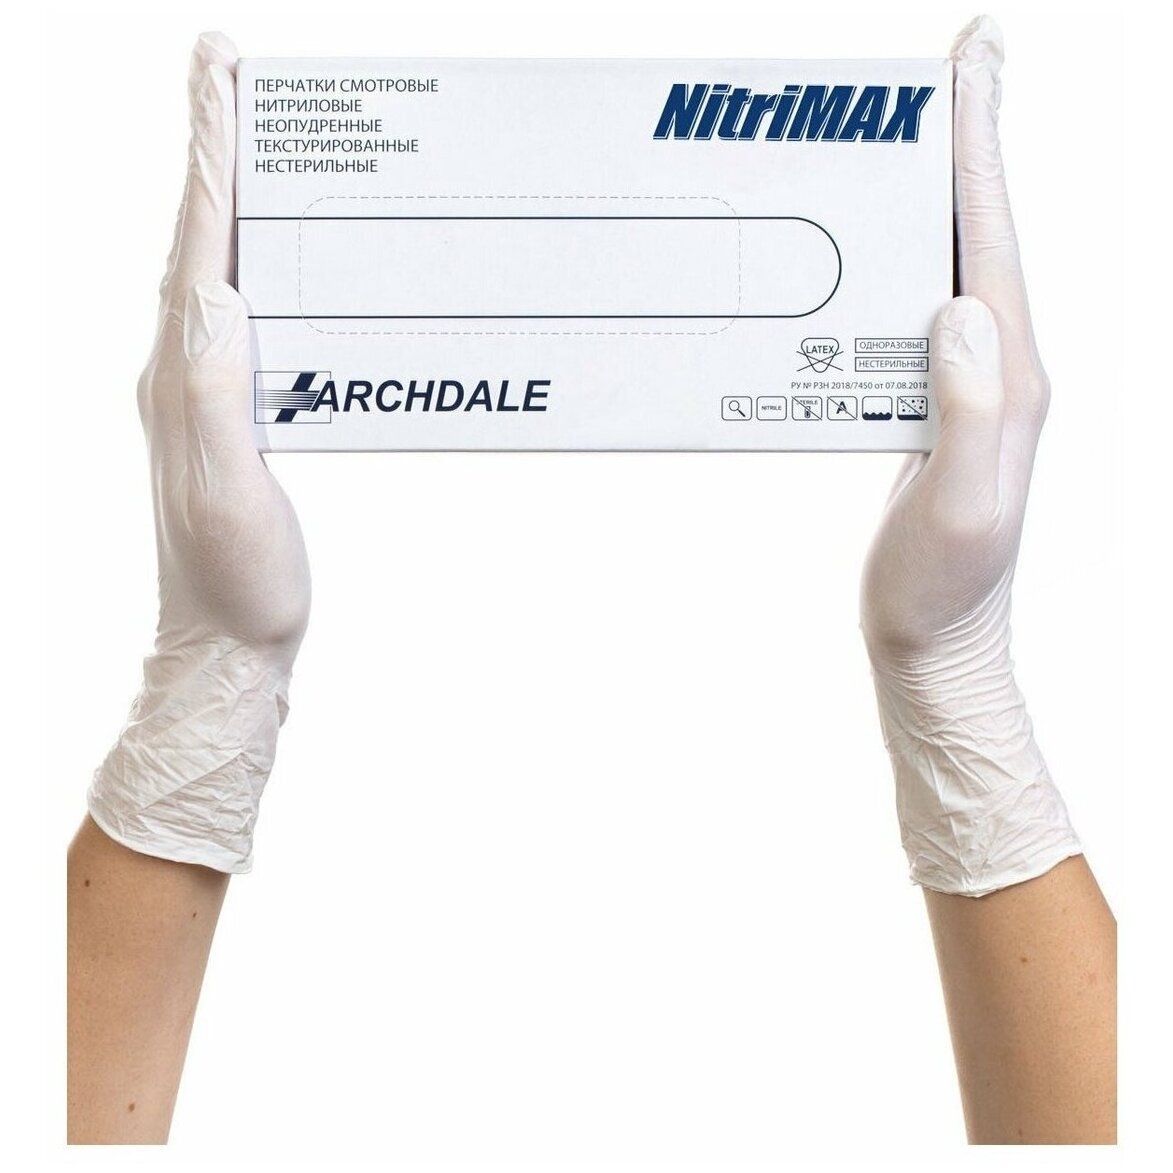 Перчатки Archdale Nitrimax смотровые нестерильные нитриловые неопудренные текстурированные белые размер M 50 пар